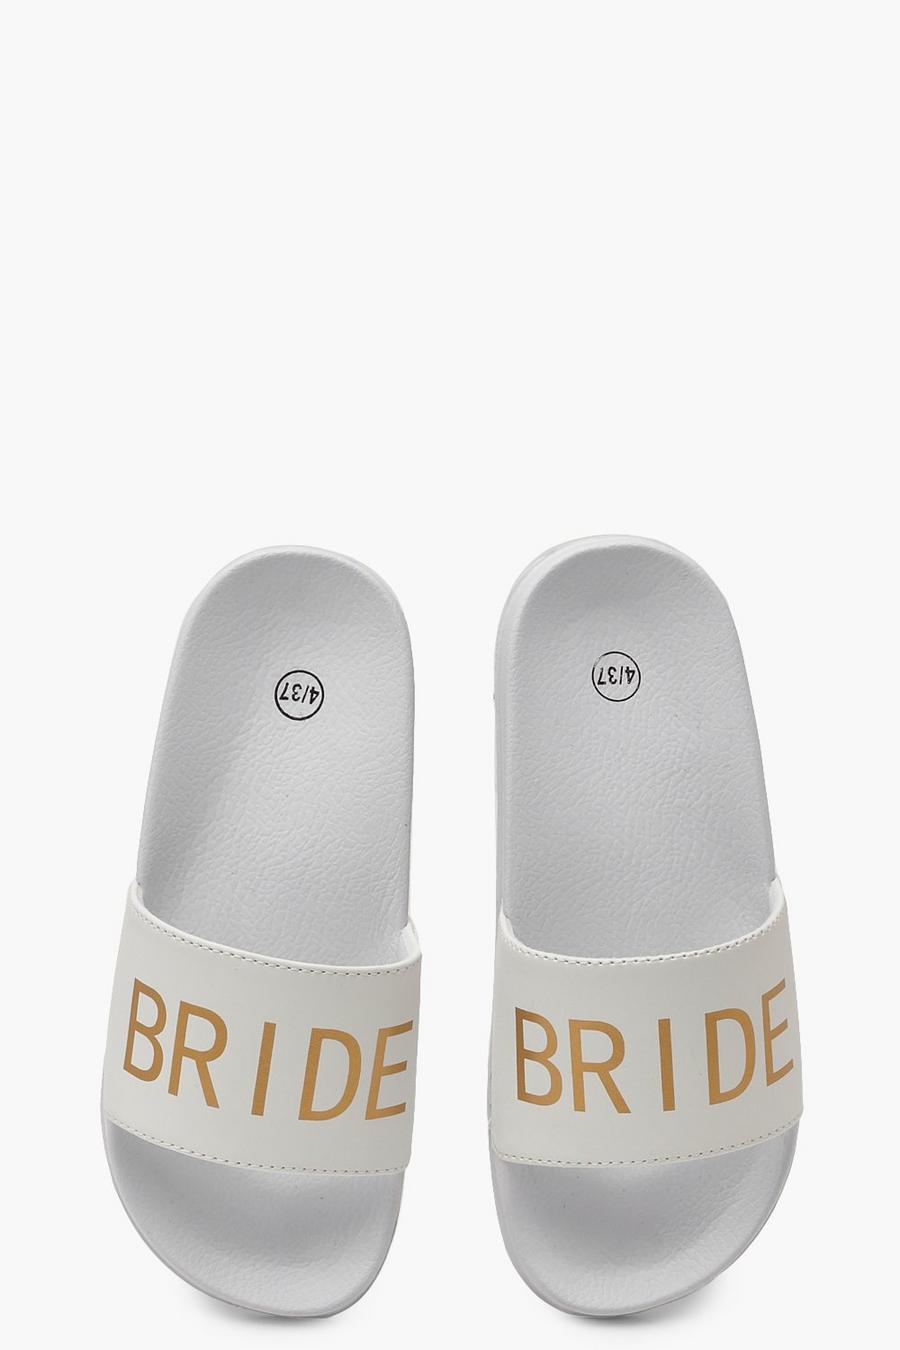 Sandalias con eslogan “Bride” image number 1